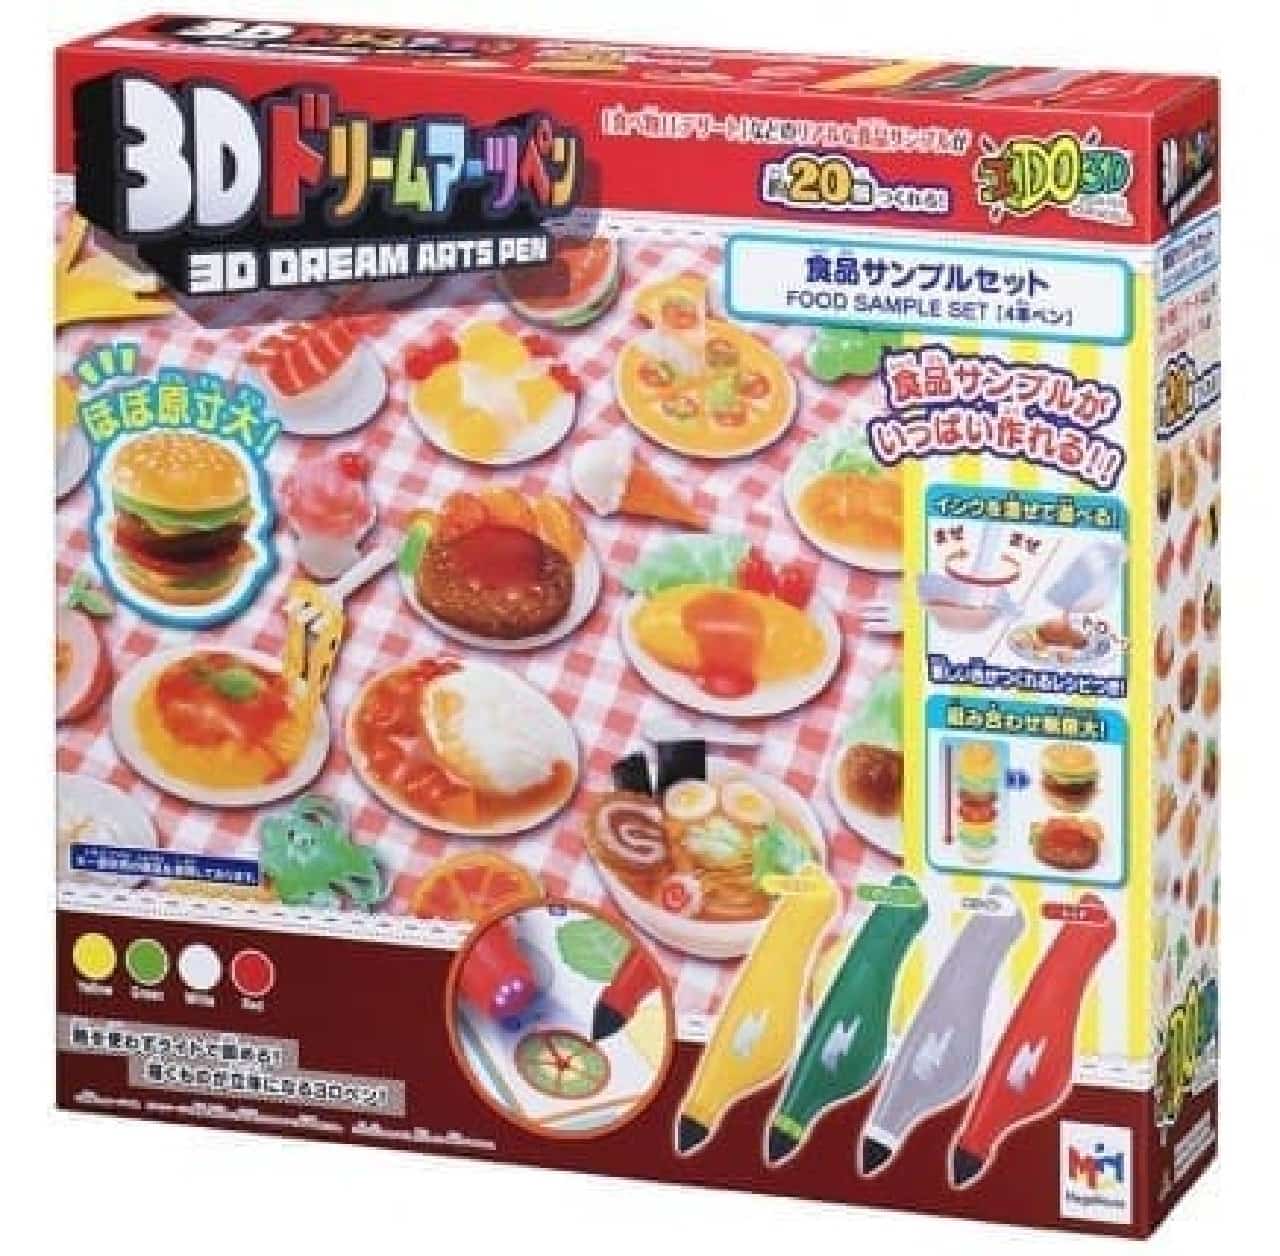 3Dドリームアーツペン 食品サンプルセット